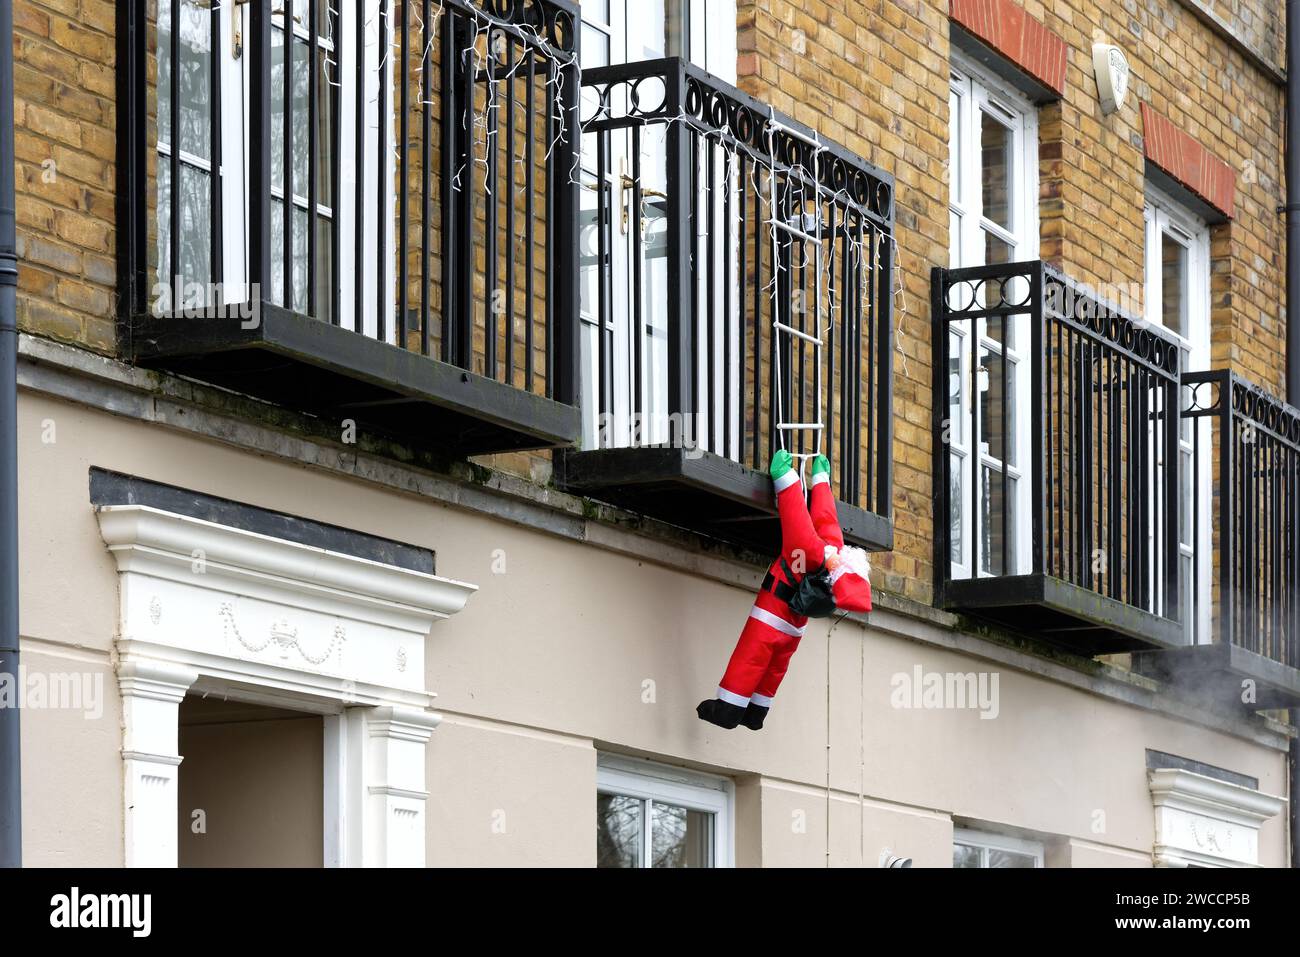 Ein hochgejagter Weihnachtsmann hängt von einem Balkon der Wohnung, als würde er versuchen, eine Leiter hinaufzuklettern, um Zugang zu den Räumlichkeiten zu erhalten, Surrey England UK Stockfoto